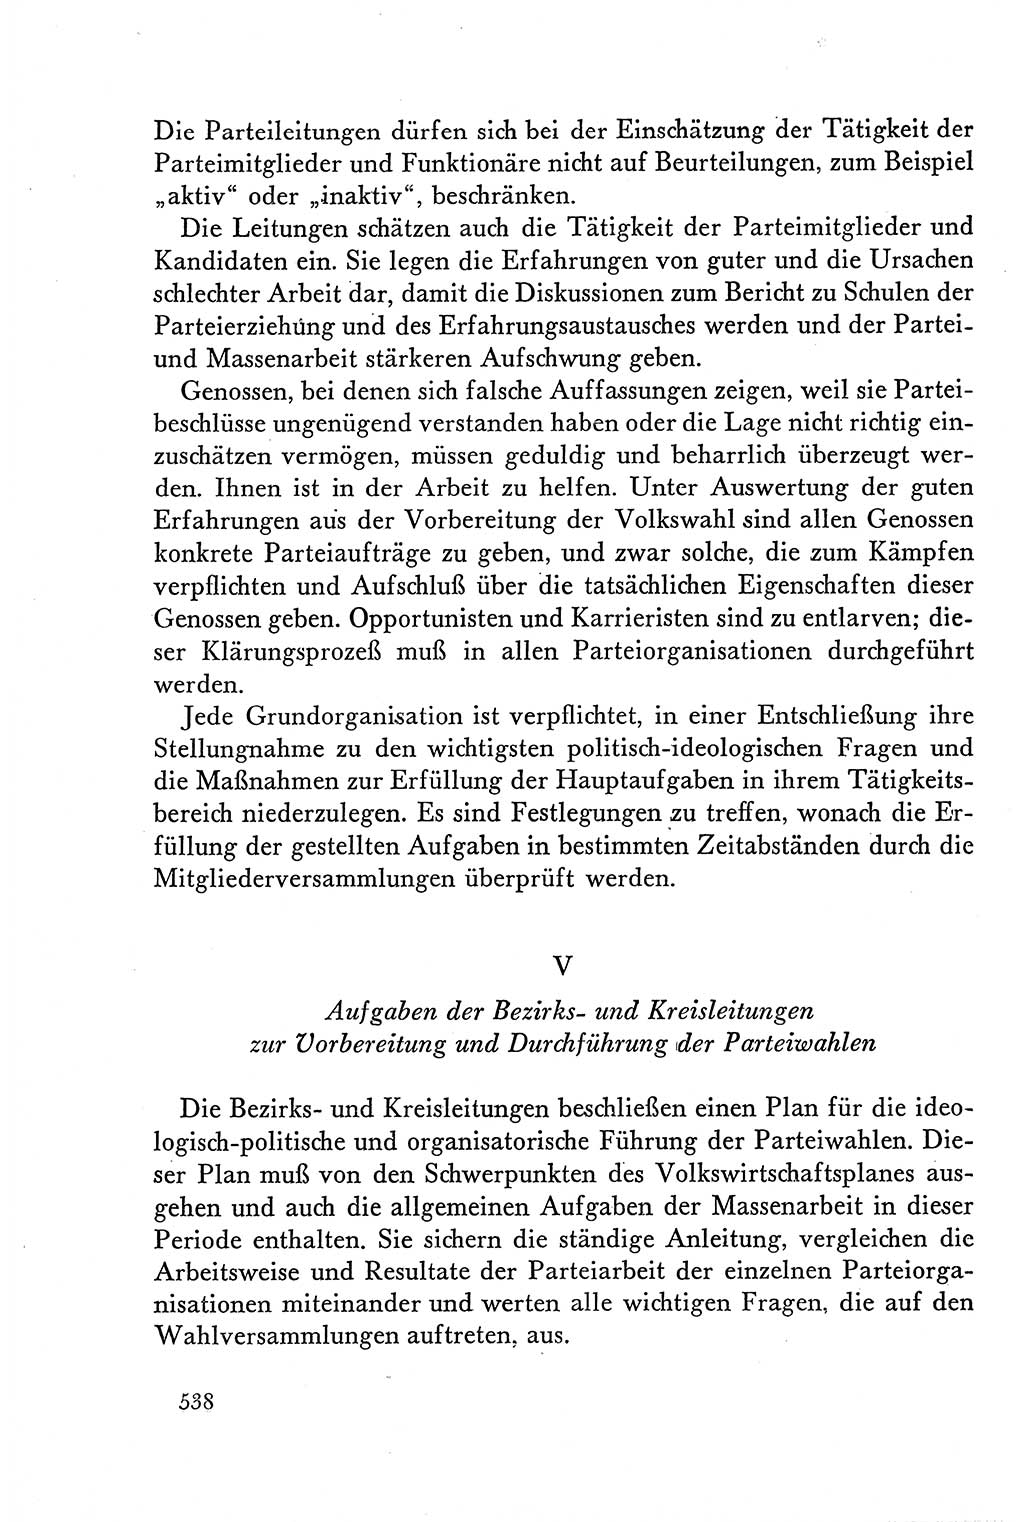 Dokumente der Sozialistischen Einheitspartei Deutschlands (SED) [Deutsche Demokratische Republik (DDR)] 1958-1959, Seite 538 (Dok. SED DDR 1958-1959, S. 538)